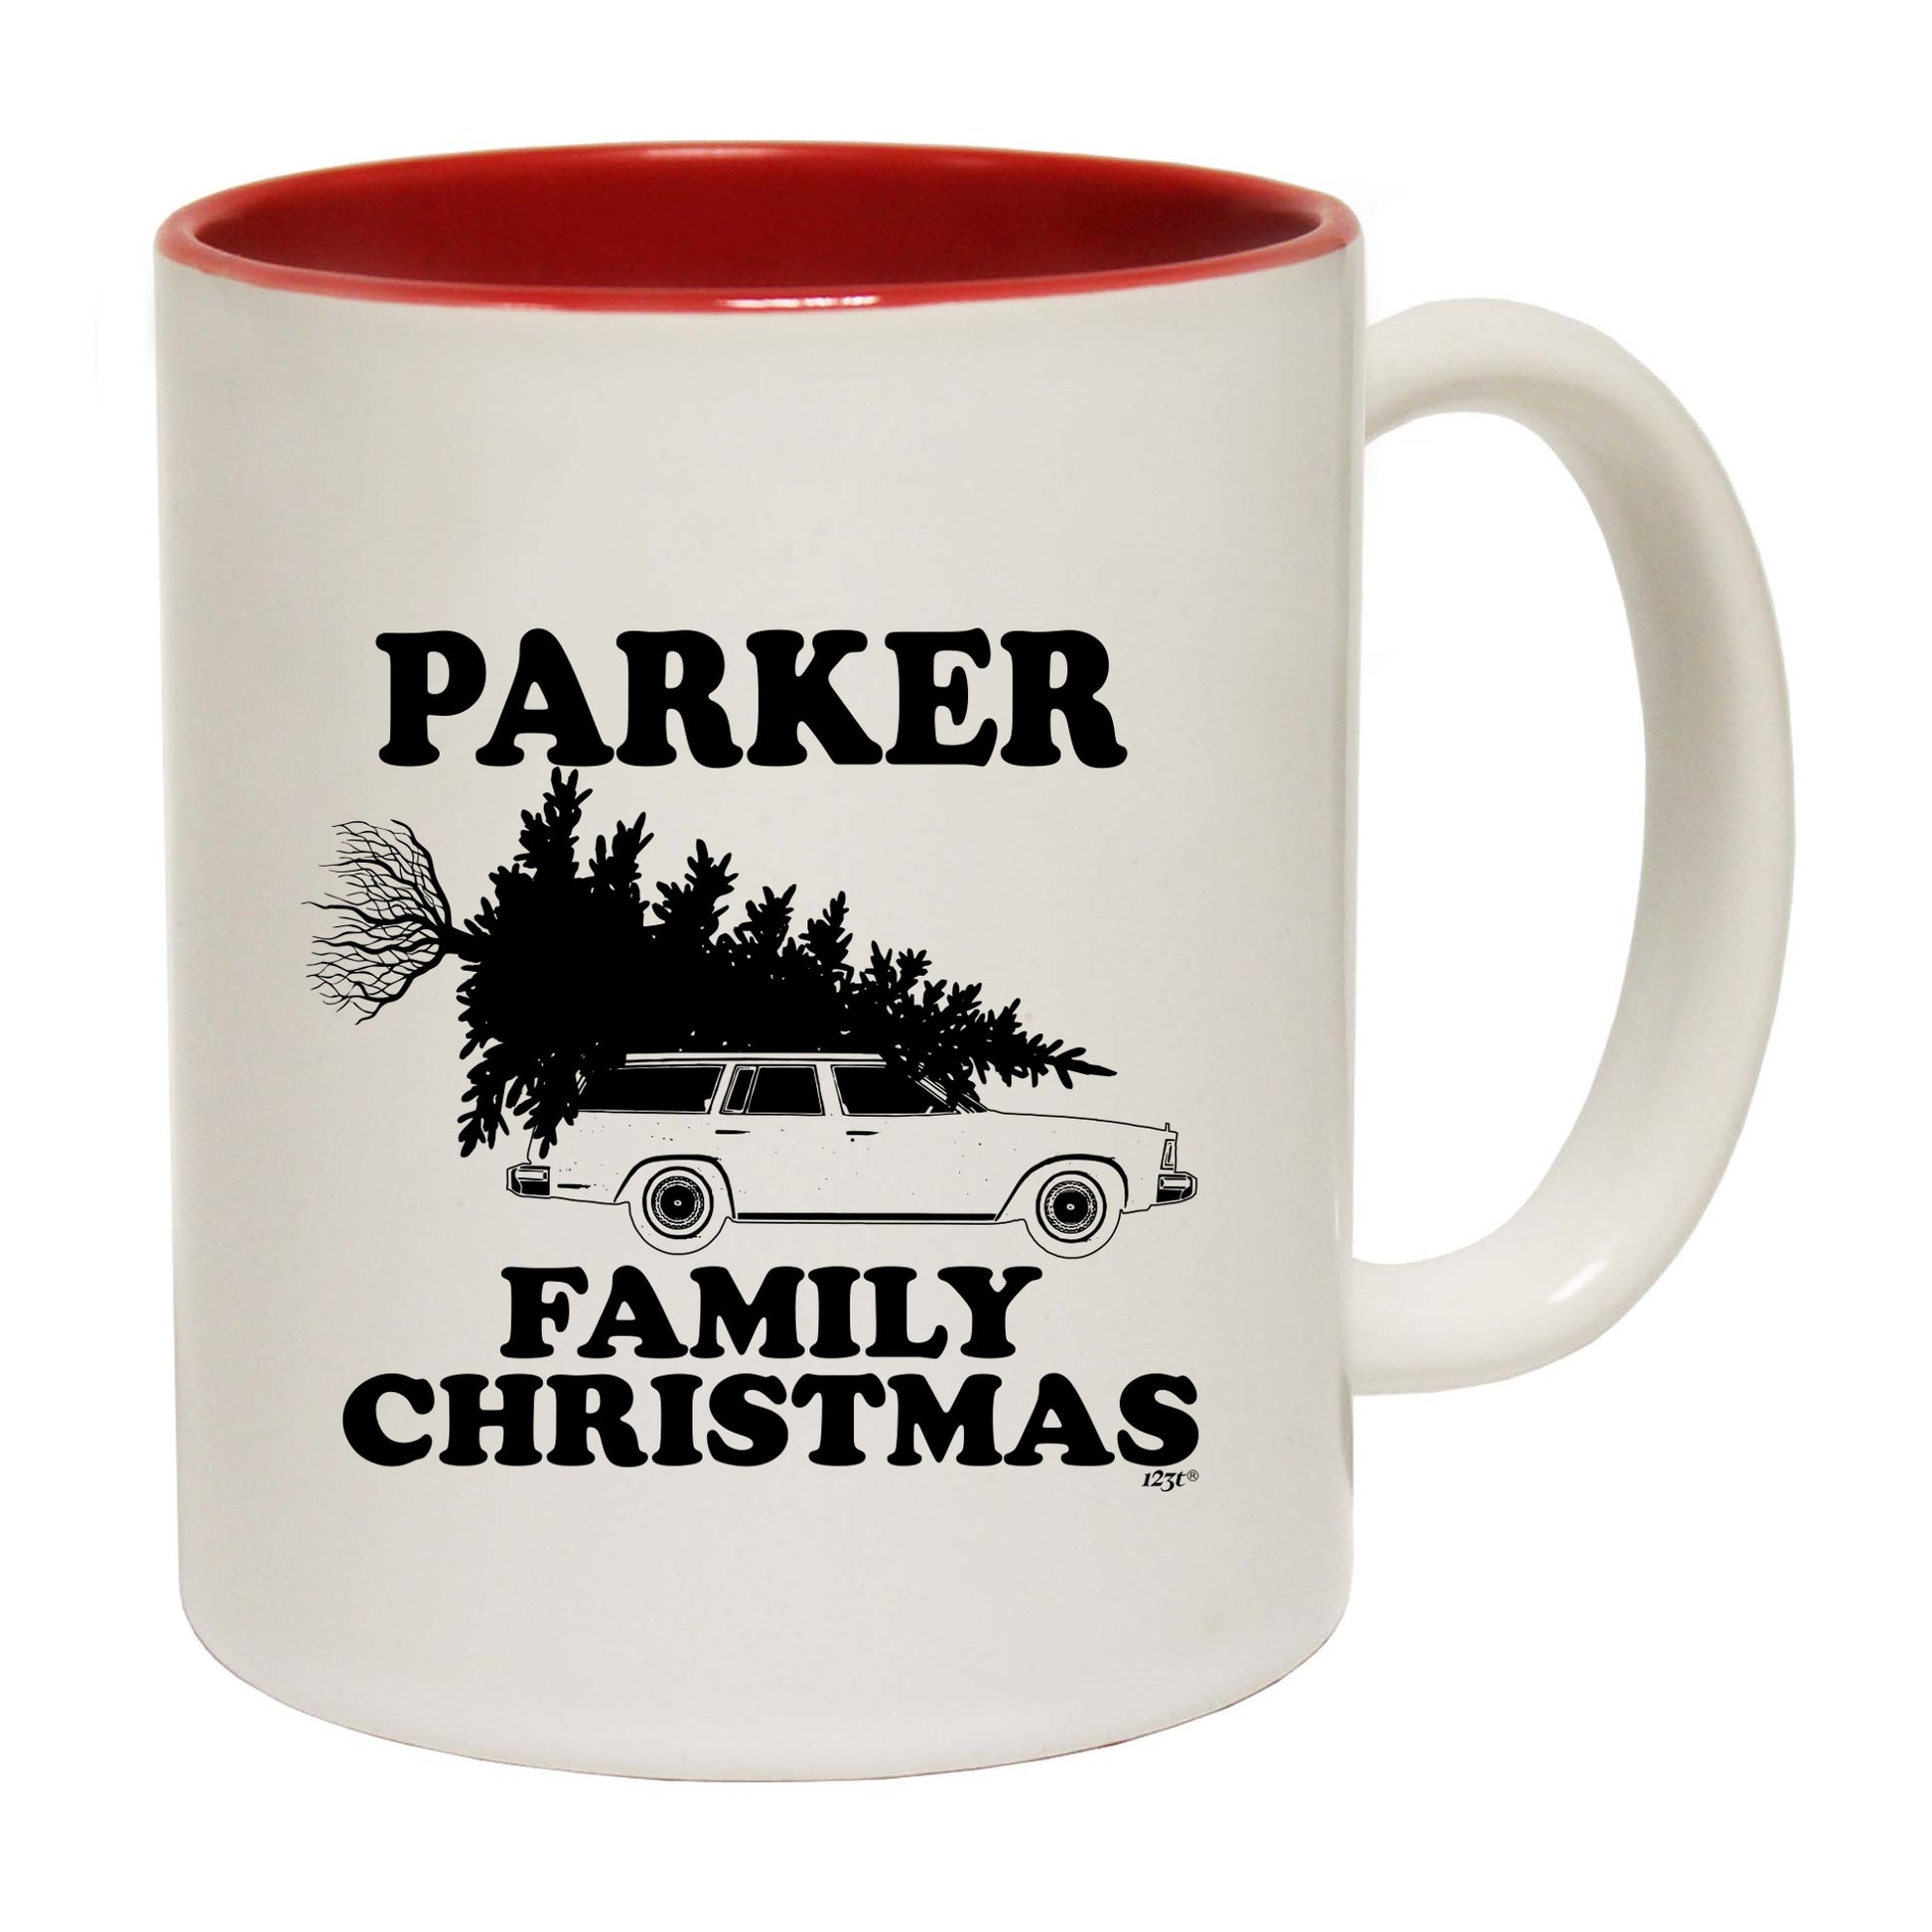 The Christmas Hub - Family Christmas Parker - Funny Coffee Mug